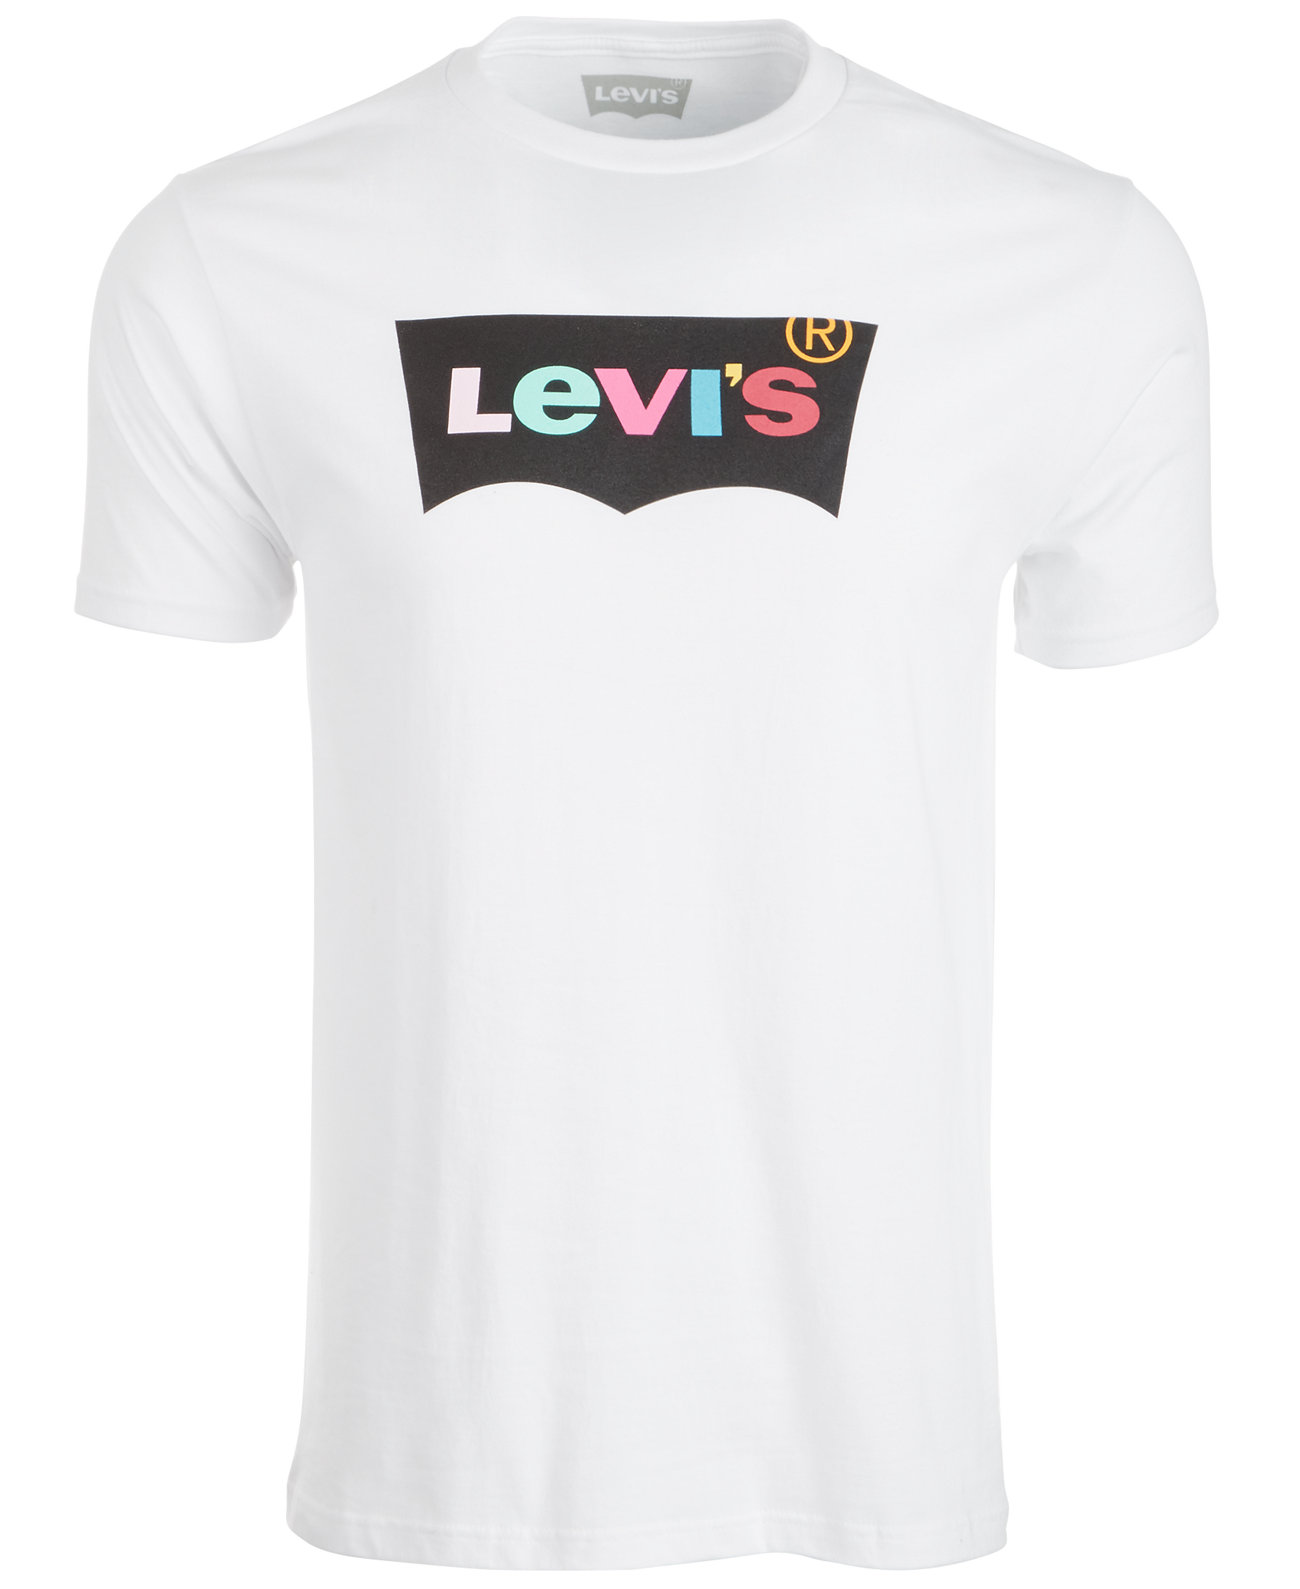 Мужская футболка с логотипом в форме летучей мыши Levi's®